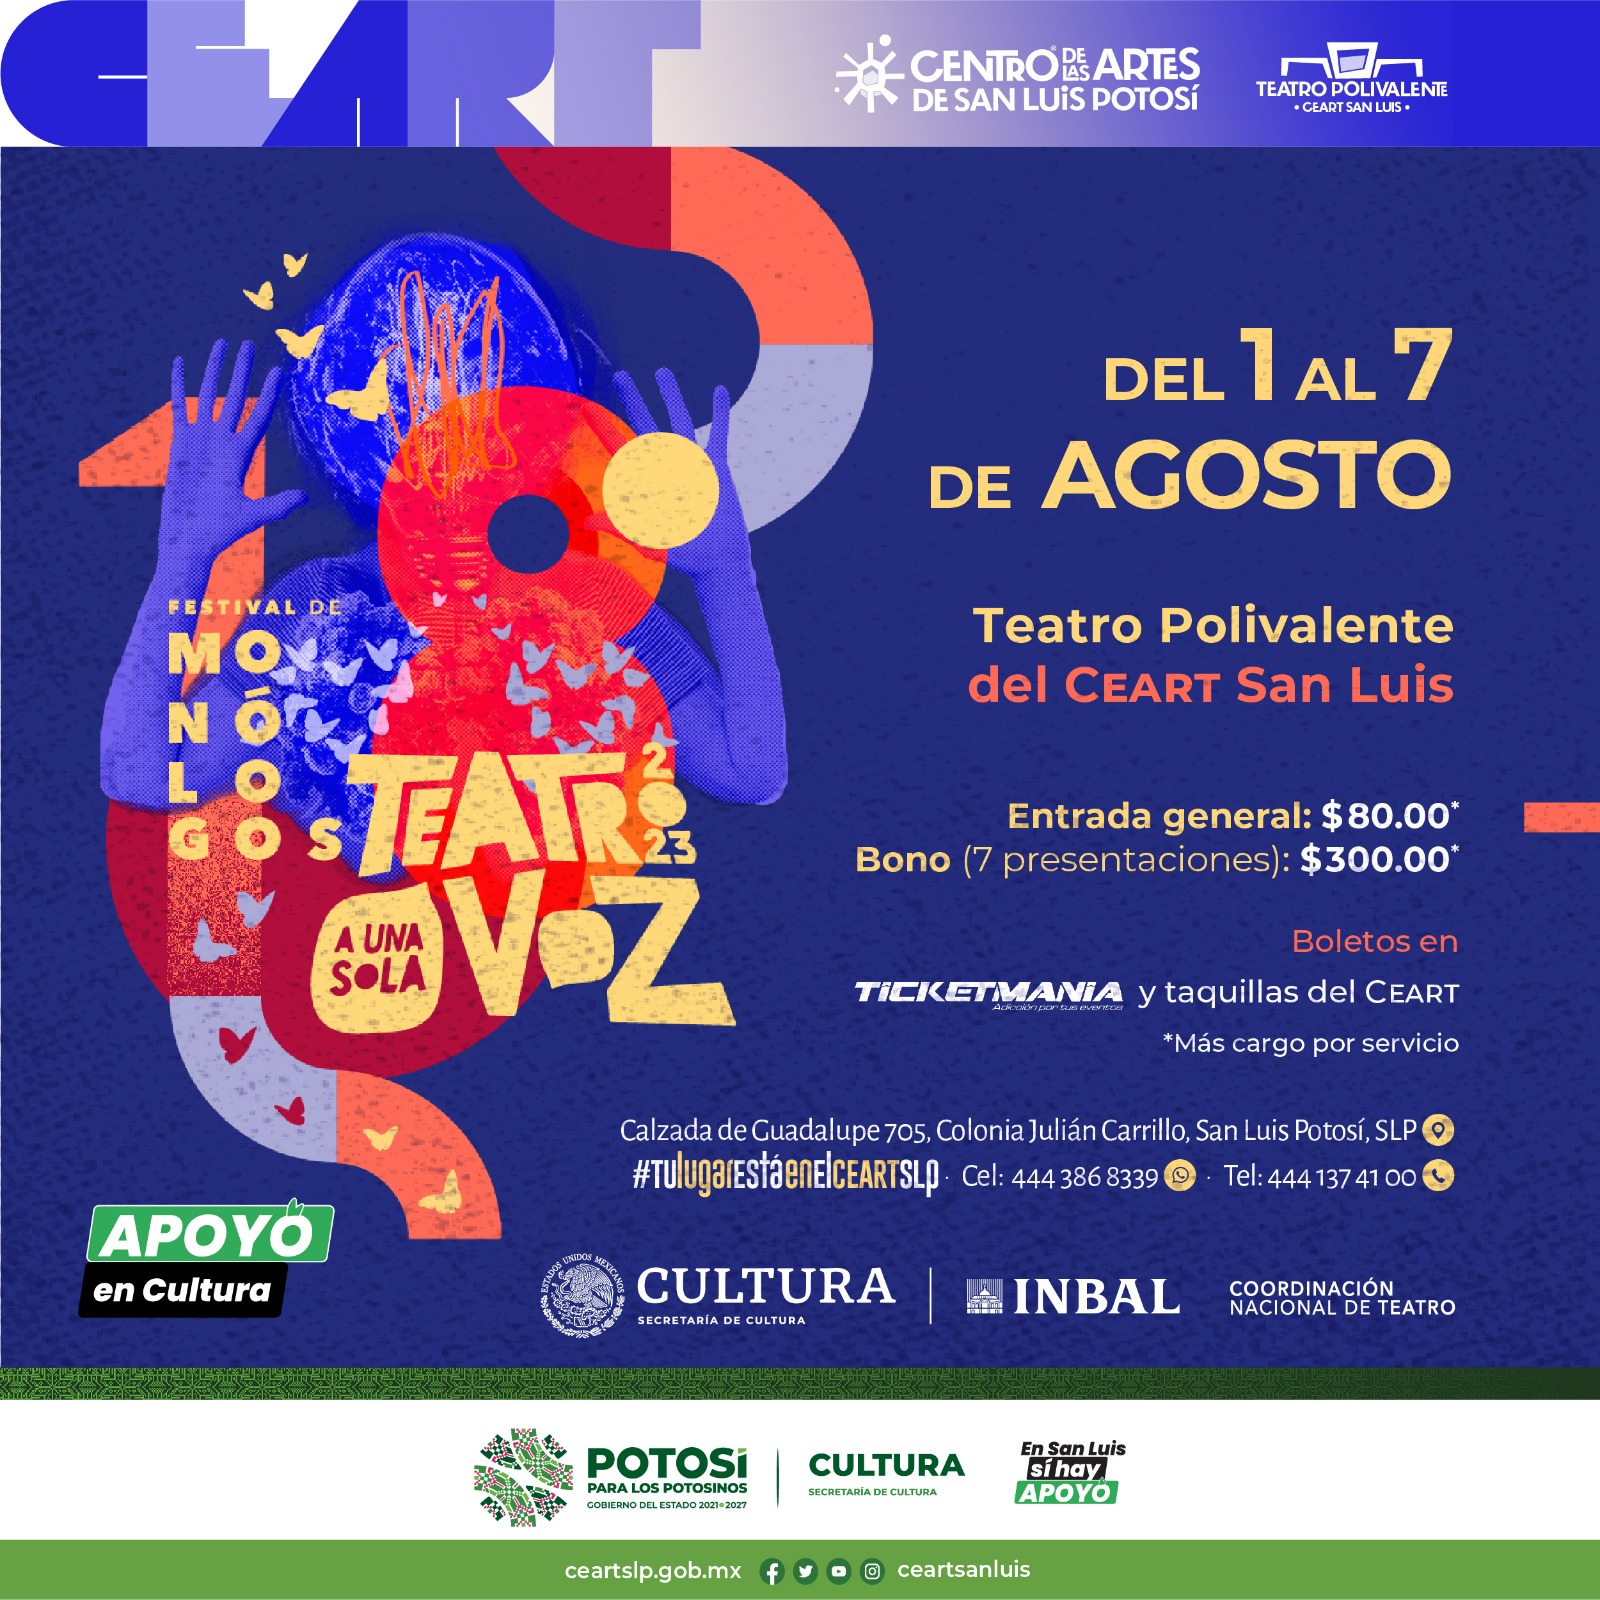 El festival de monólogos más importante de México se realizará en San Luis Potosí del 1 al 7 de agosto en el Teatro Polivalente del Centro de las Artes